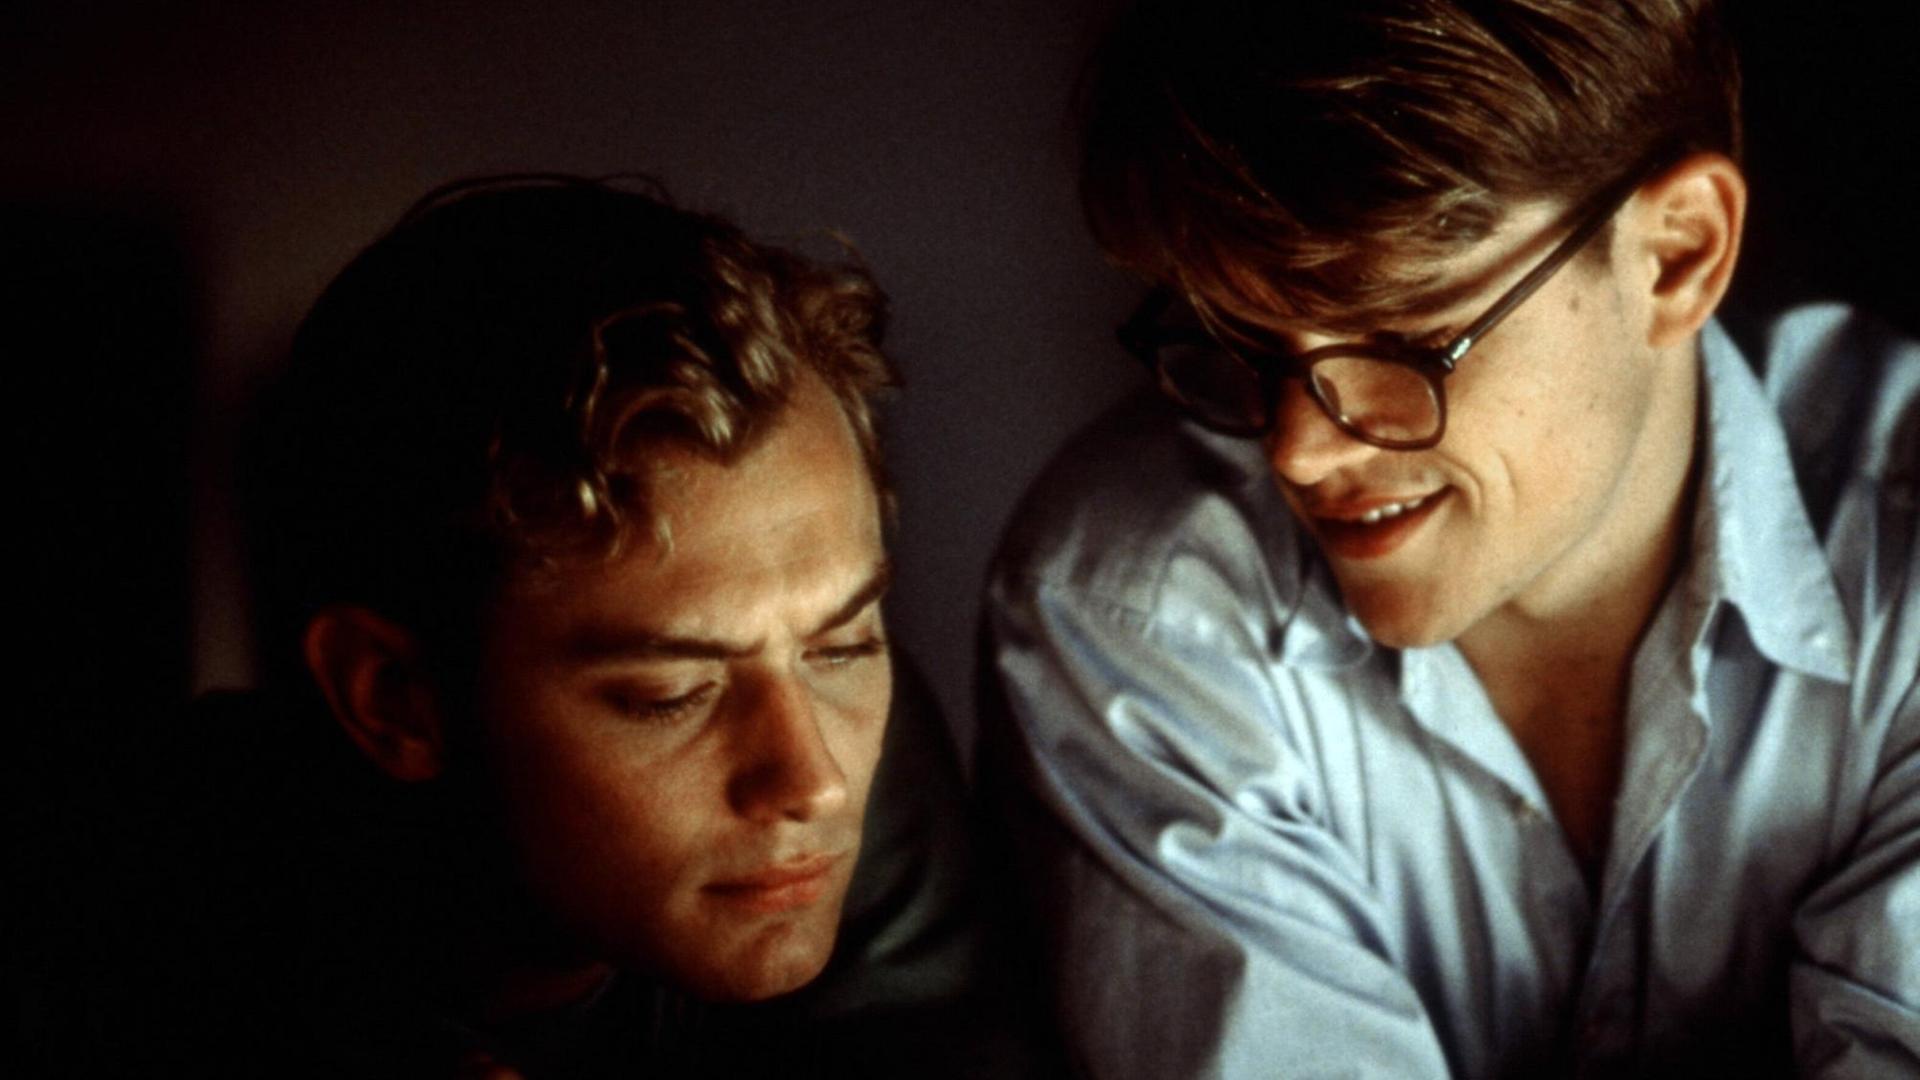 Das Still aus "Der talentierte Mr. Ripley" zeigt Jude Law und Matt Damon in einer unterbelichteten Großaufnahme nebeneinander.